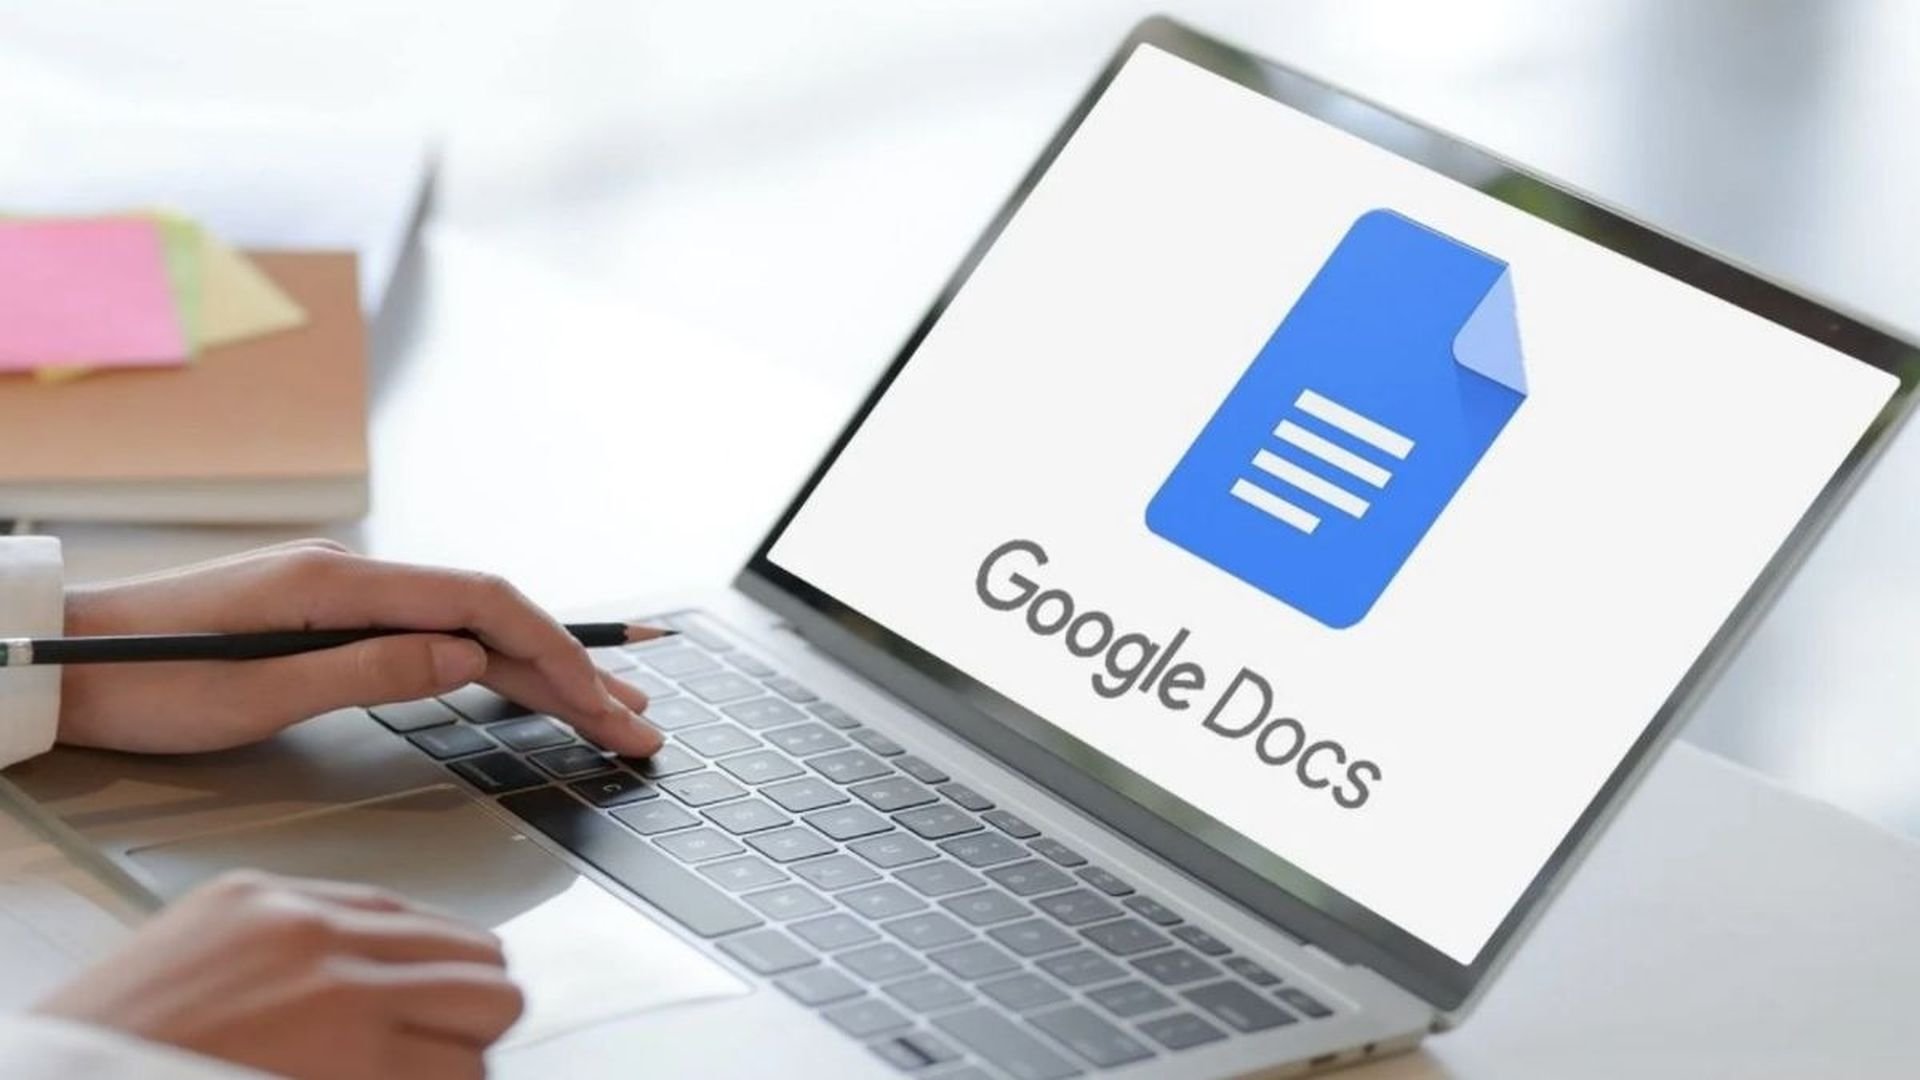 Comment faire un indice dans Google Docs ?